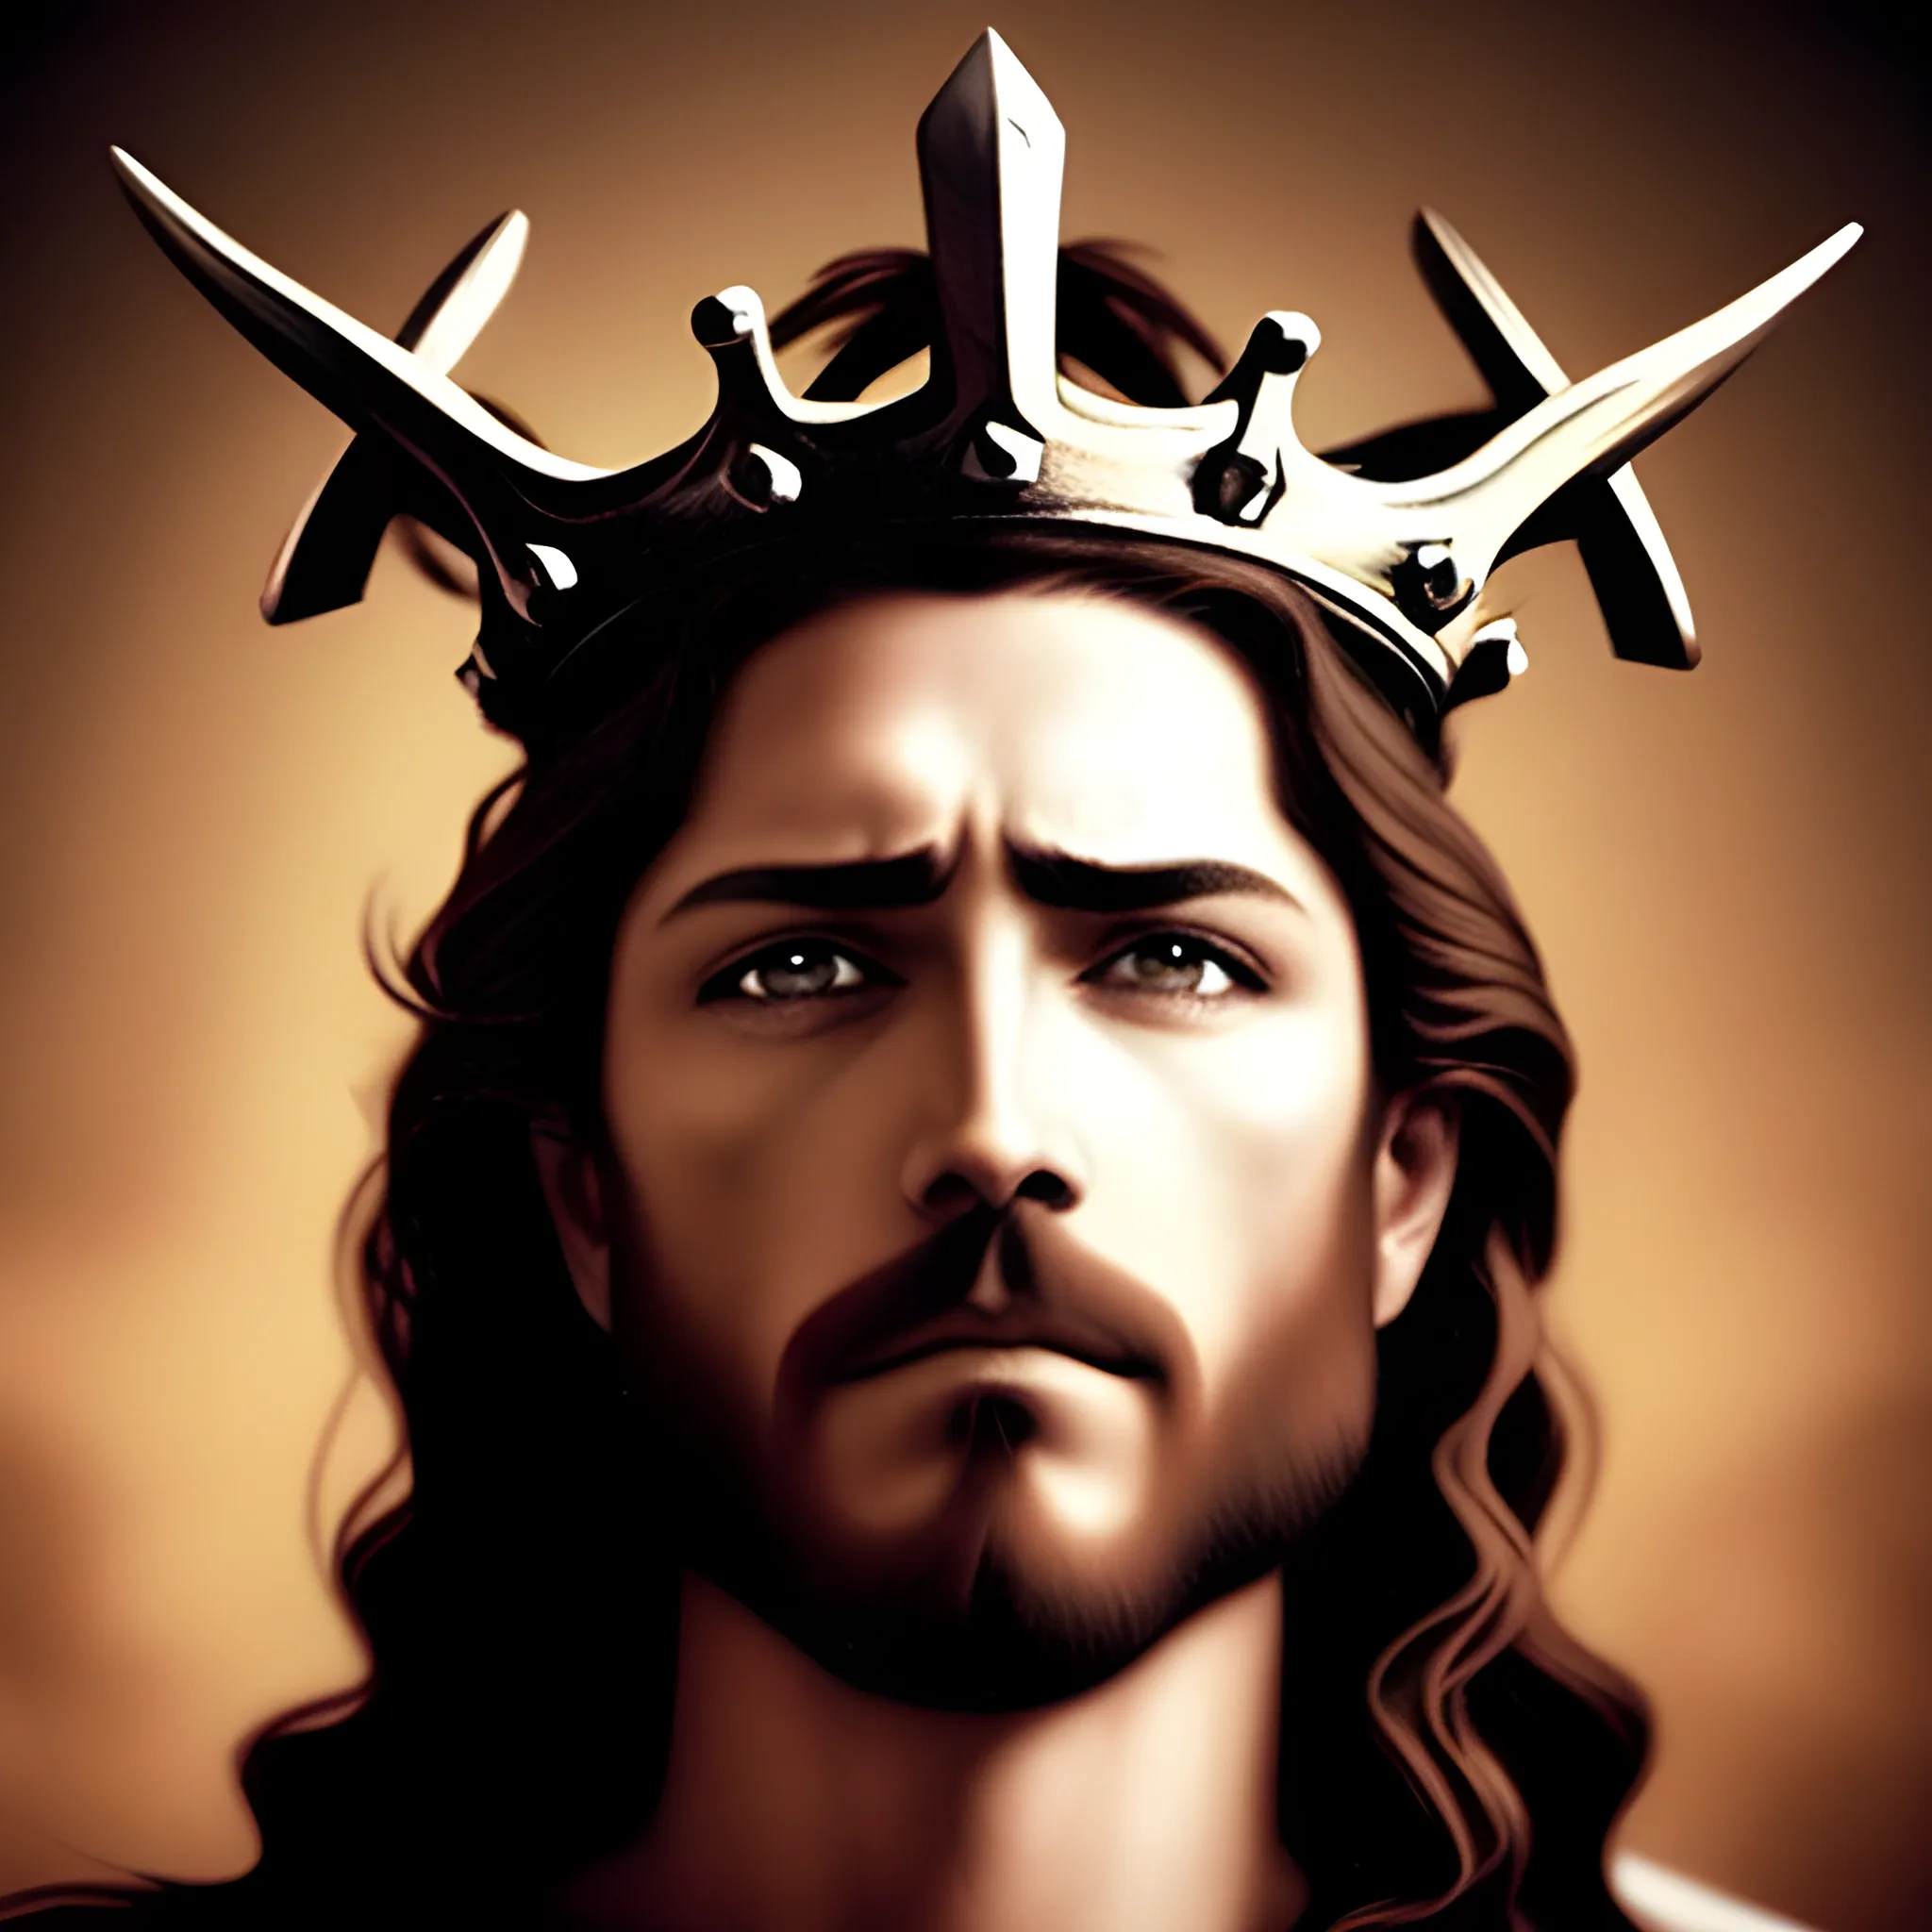 jesus thorn crown badass
